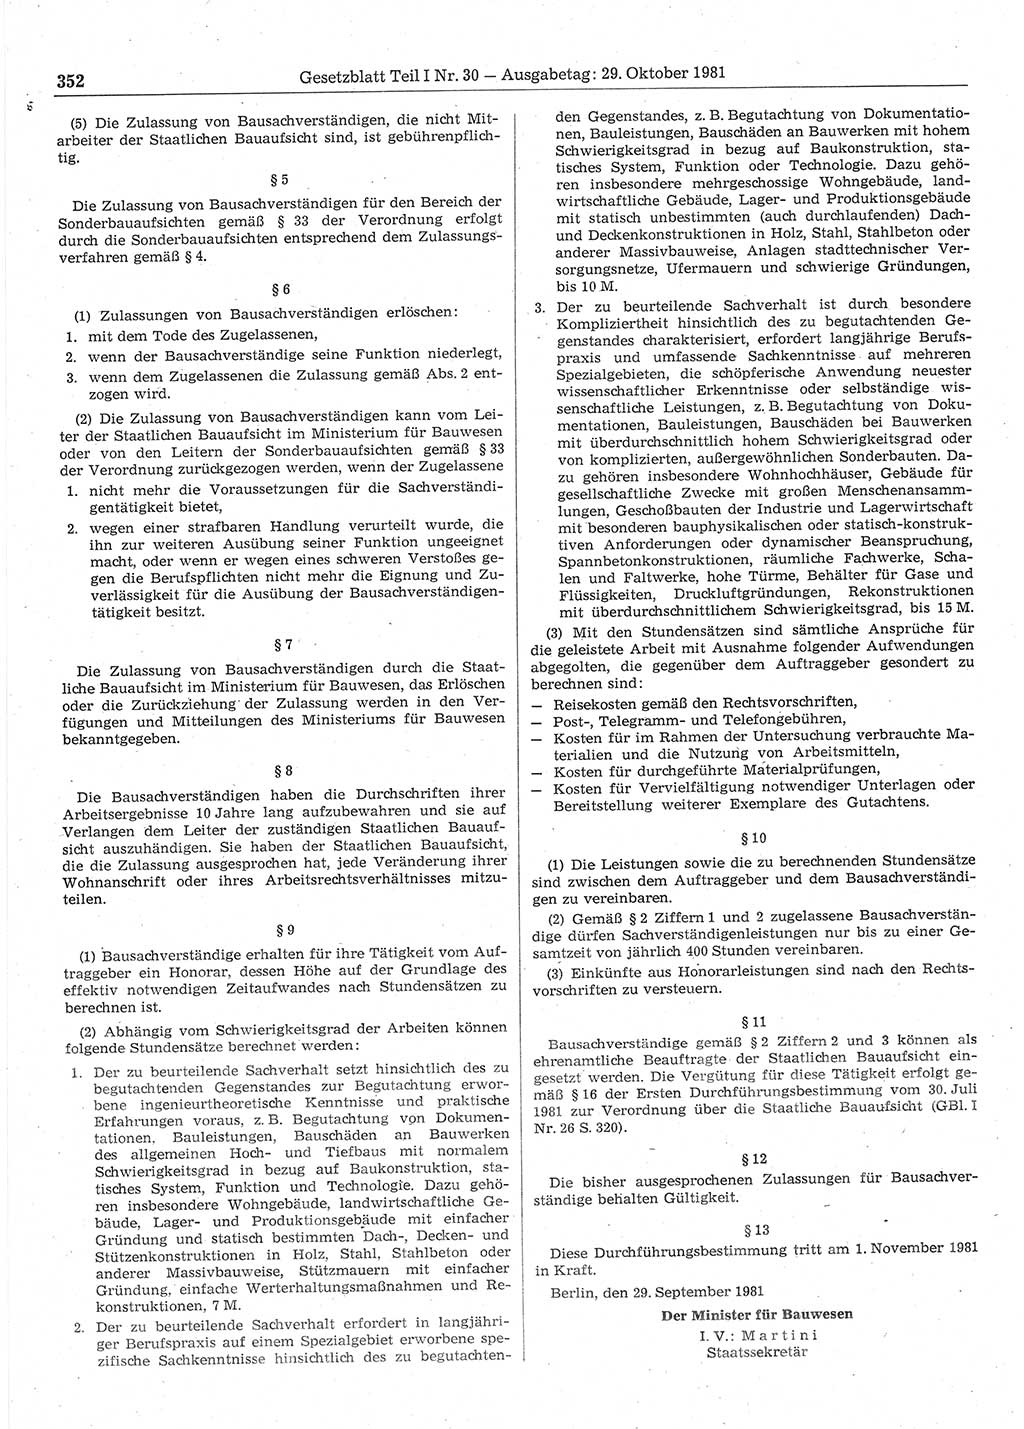 Gesetzblatt (GBl.) der Deutschen Demokratischen Republik (DDR) Teil Ⅰ 1981, Seite 352 (GBl. DDR Ⅰ 1981, S. 352)